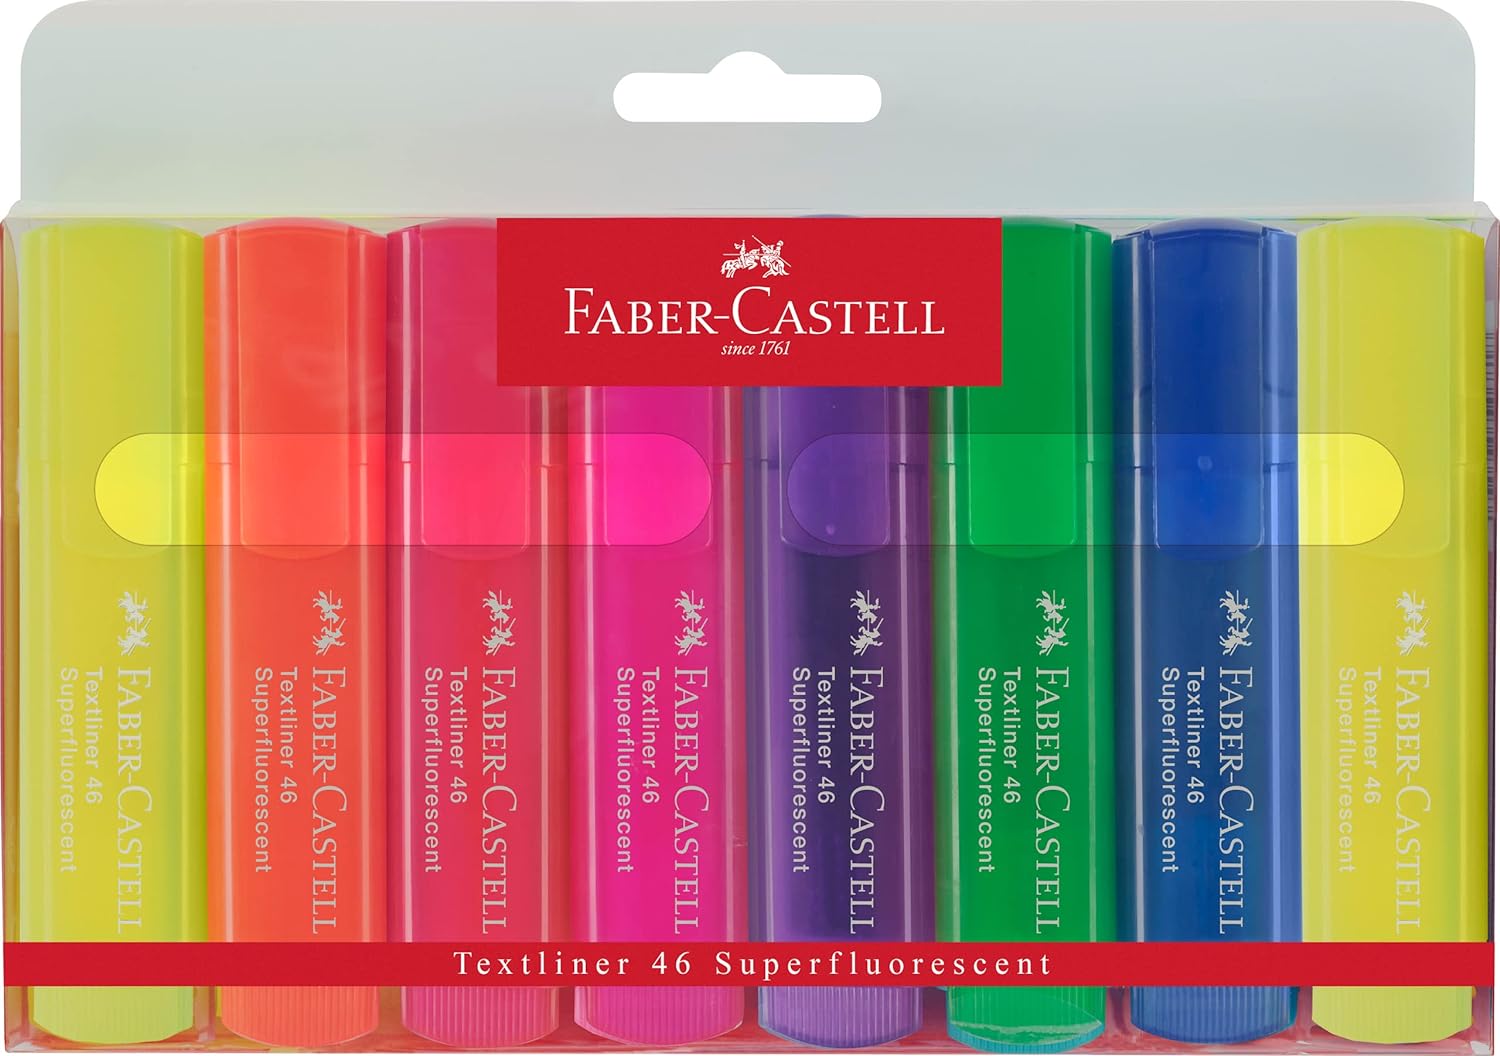 Faber-Castell Textliner 46 Superfluorescent Lot de 8 Marqueurs Fluorescents - Pointe Biseautée - Trait entre 1mm et 5mm - Encre à Base d'Eau - Couleurs Assorties